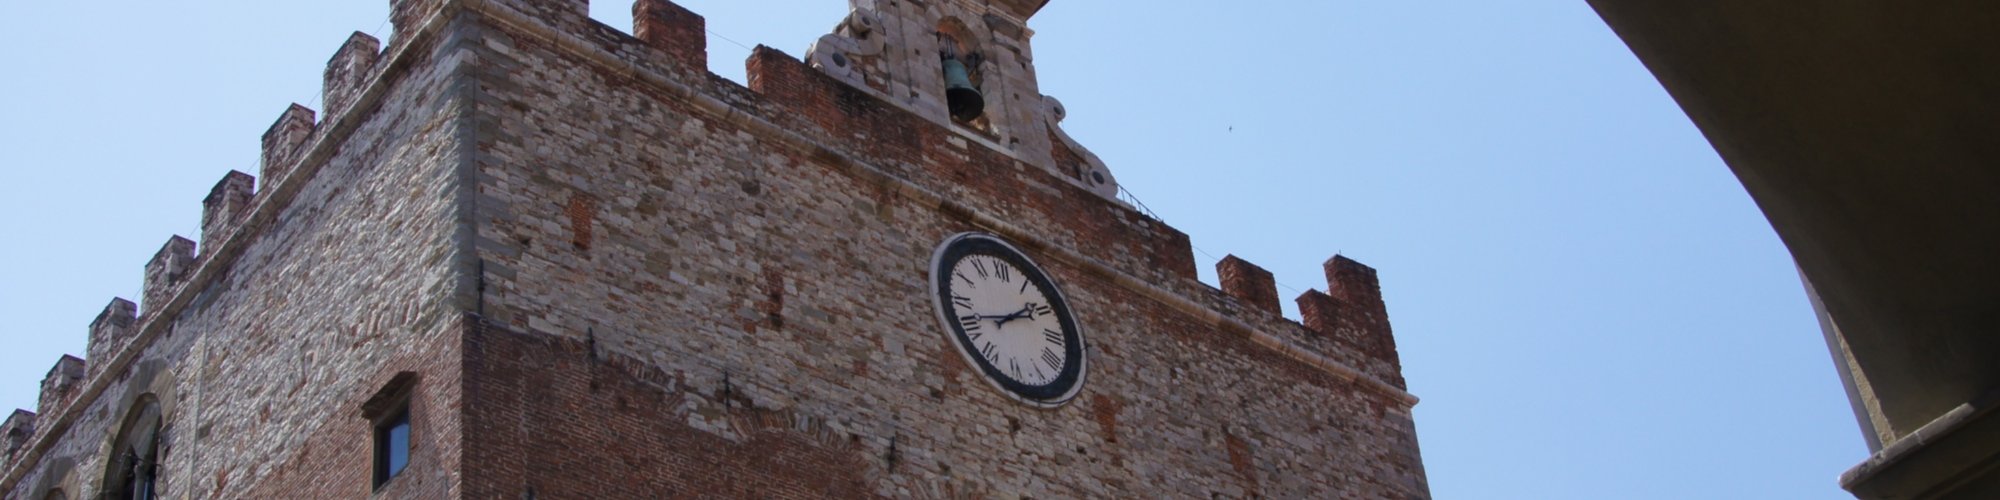 Uno scorcio di Palazzo Pretorio a Prato